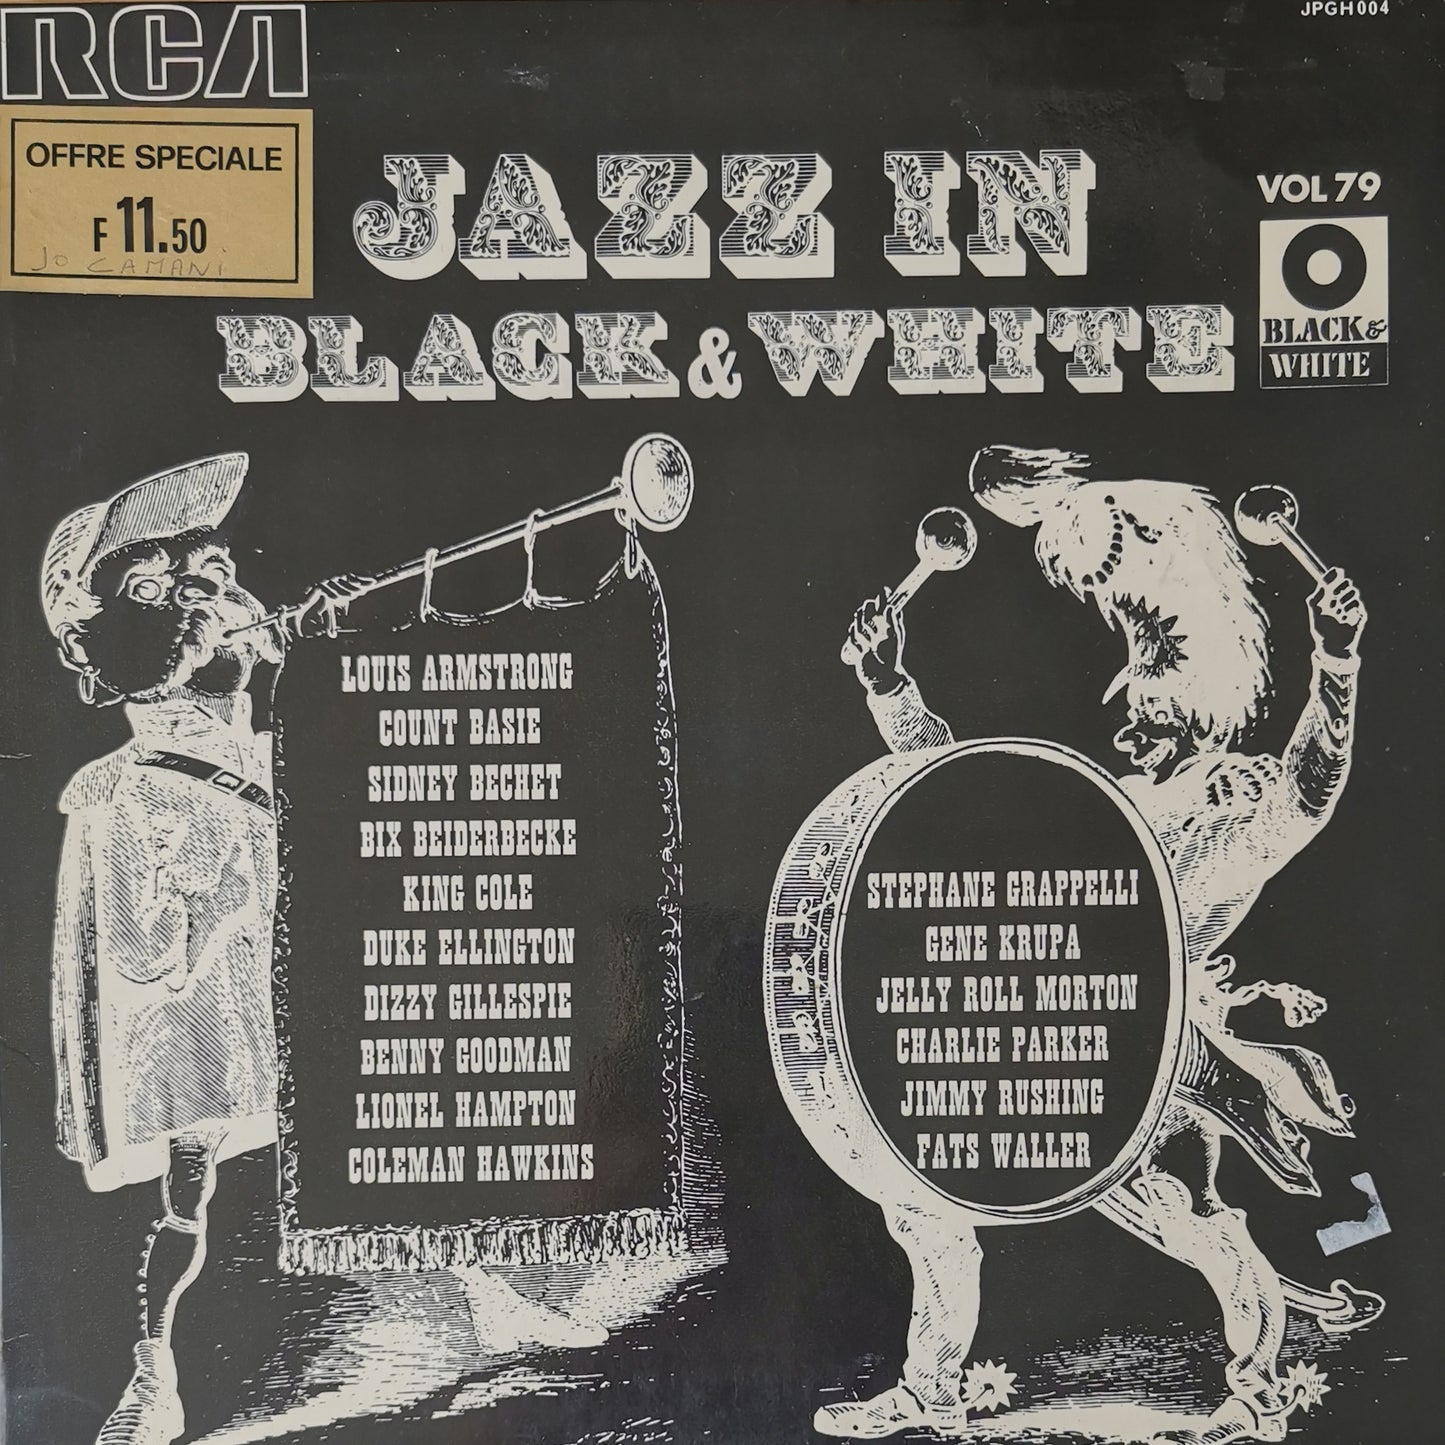 JAZZ IN BLACK & WHITE